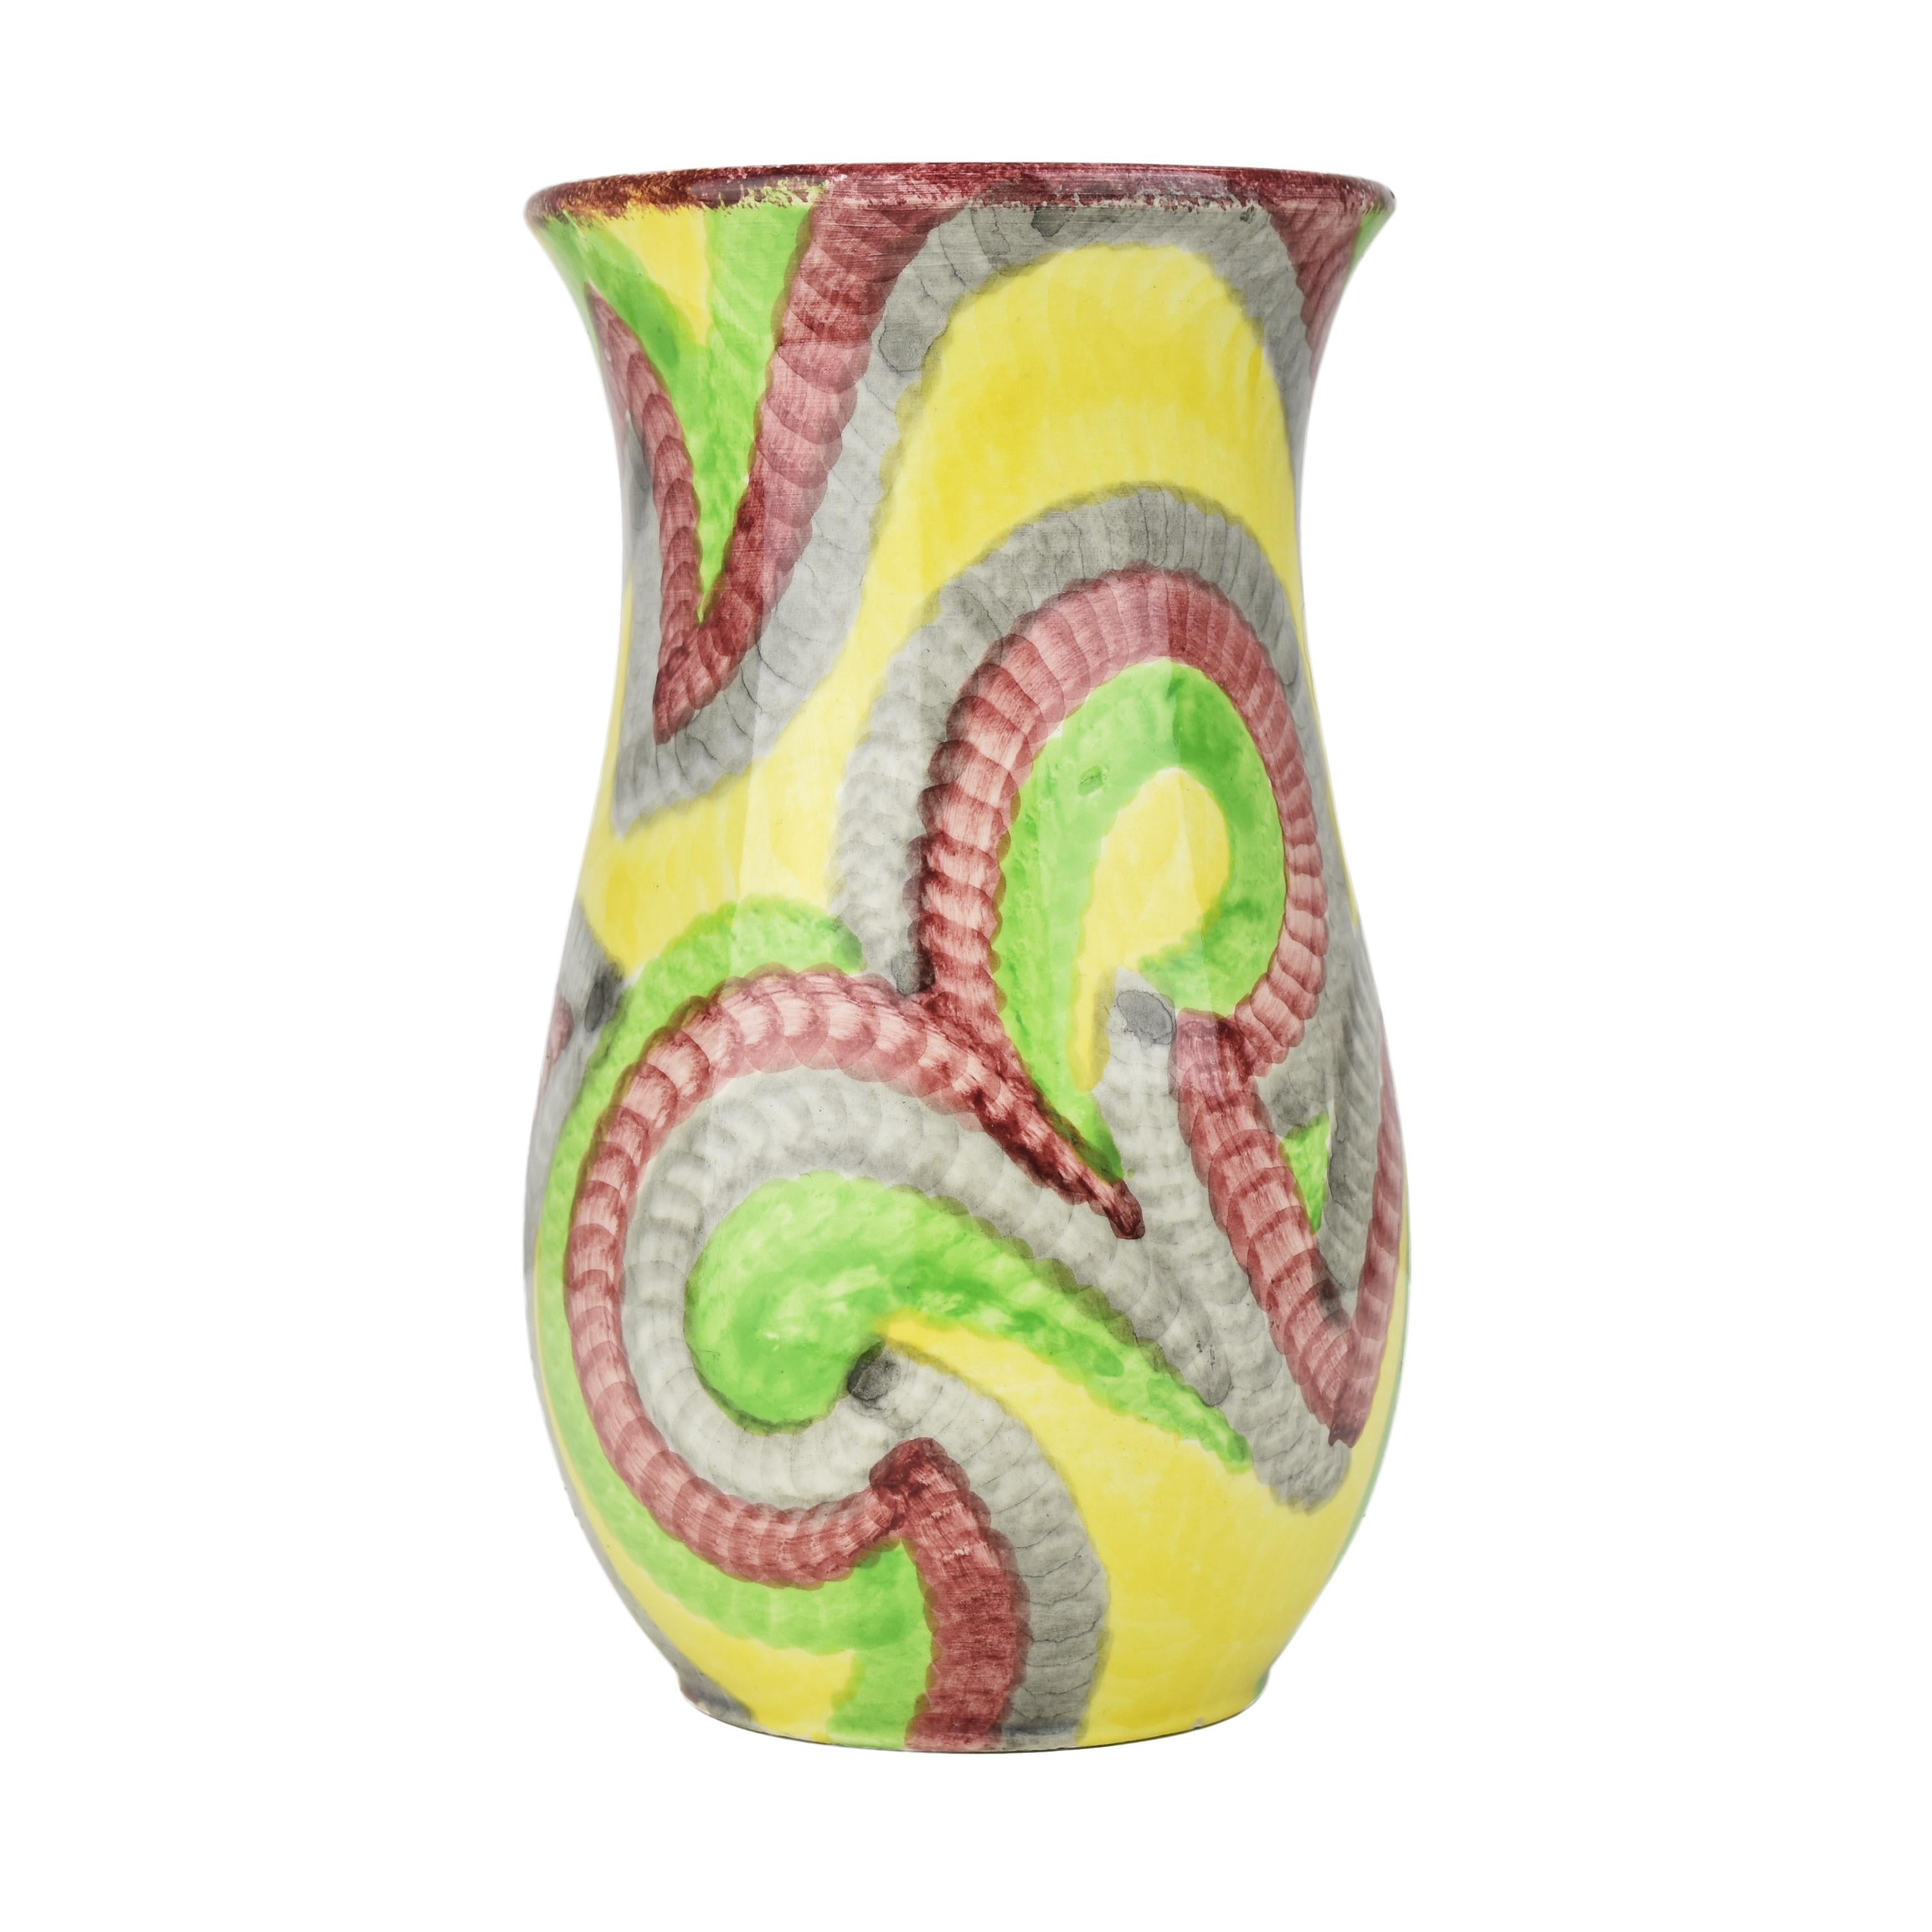 Le vase Schramberg Eva Zeisel Gobelin Art Deco Bauhaus est une pièce d'art céramique unique et de grande collection. Ce vase a été créé au début du XXe siècle pendant la période Art déco, qui se caractérisait par des formes géométriques audacieuses,